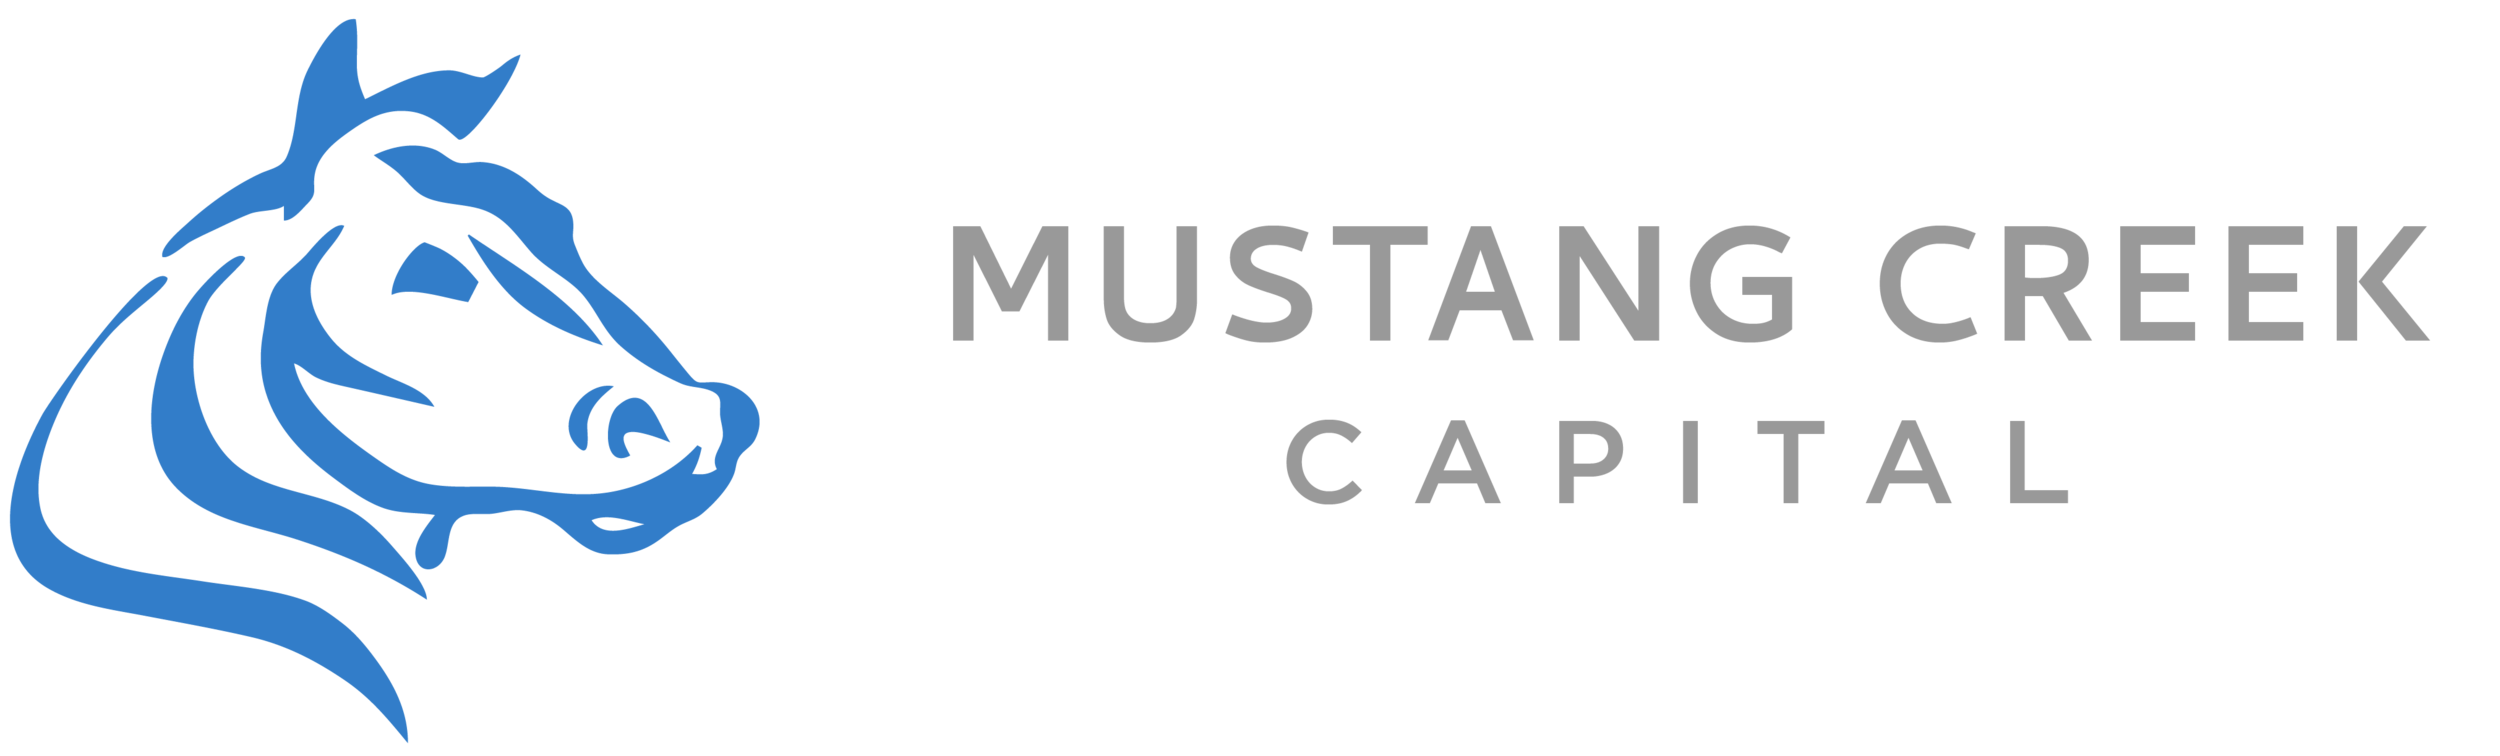 Mustang Creek Capital